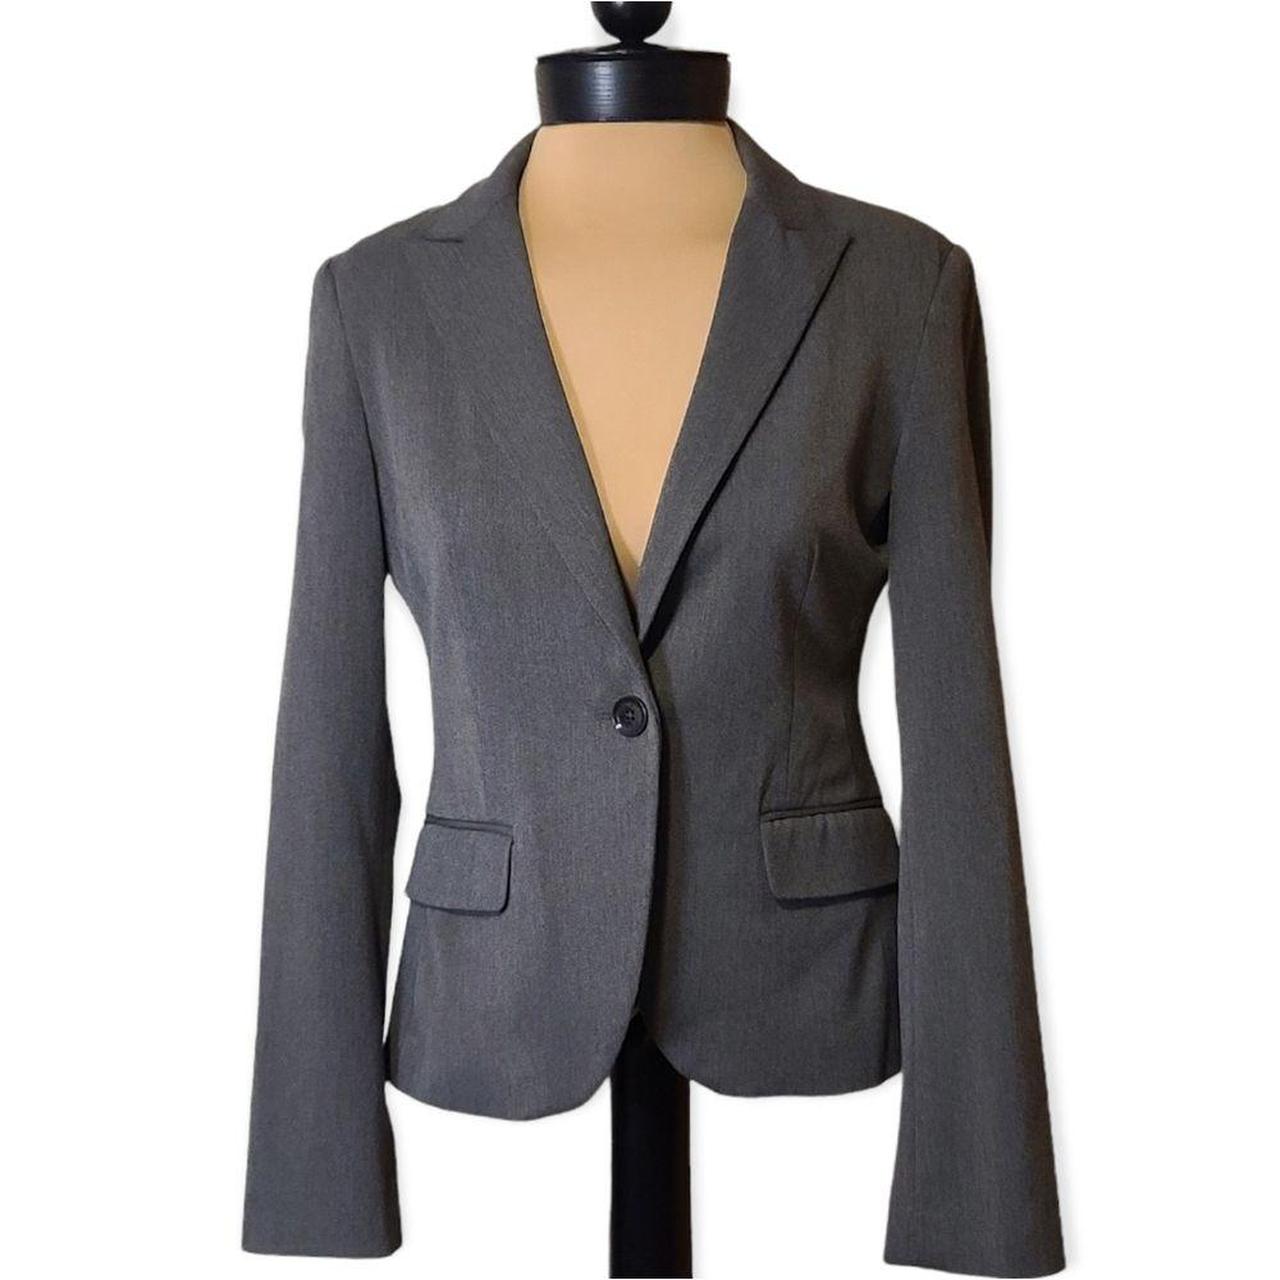 Product Image 1 - Express Grey Blazer Suit Jacket,